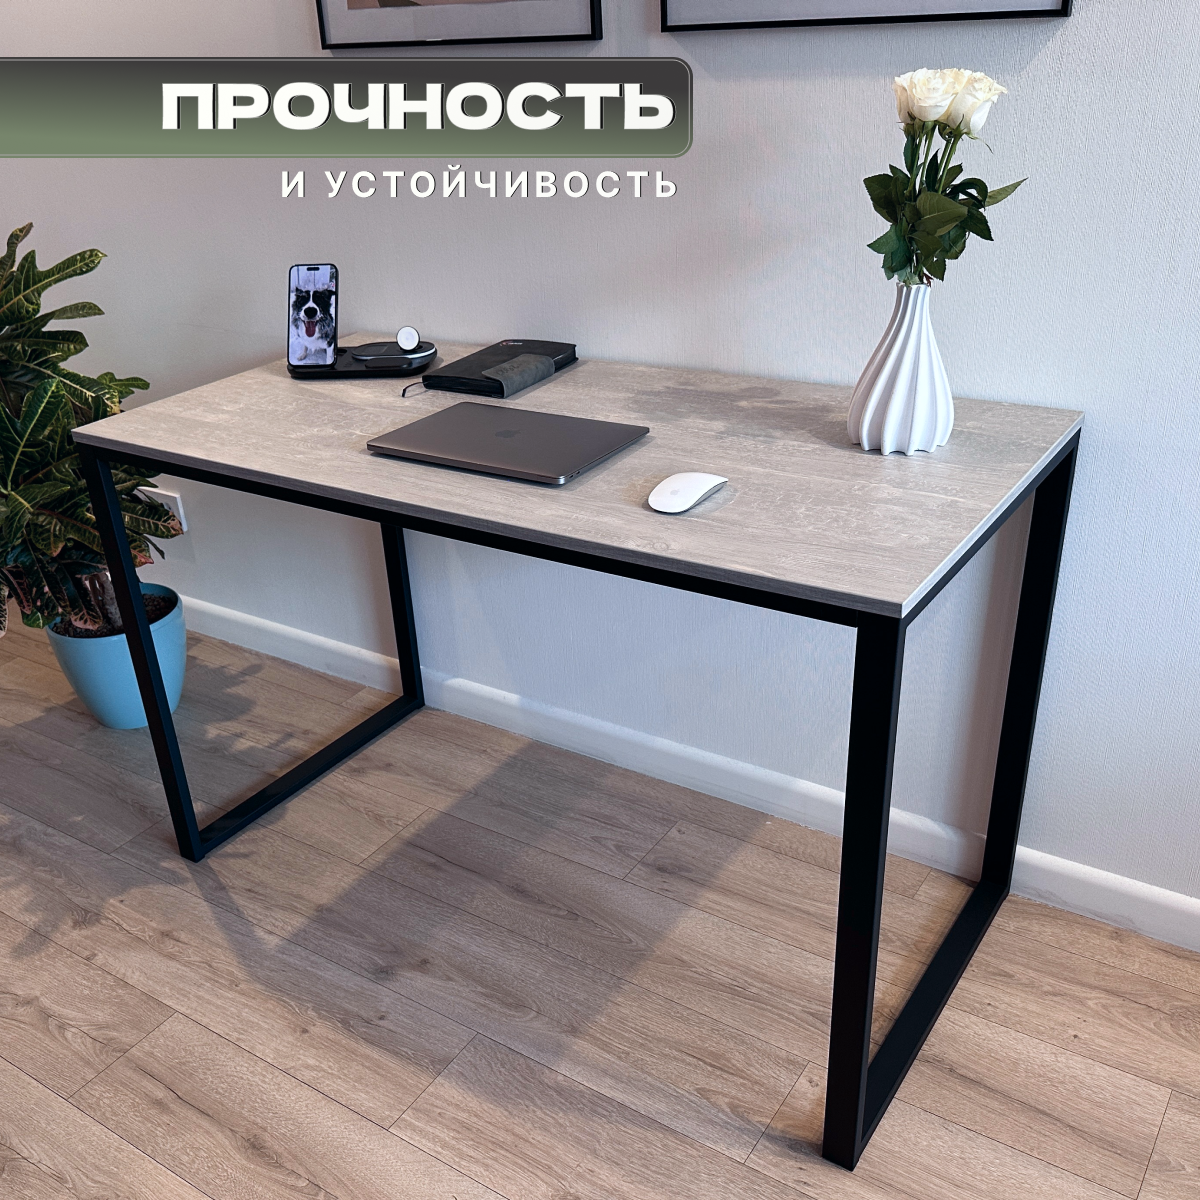 Стол письменный, офисный, кухонный, обеденный в стиле Loft цвет Феникс 110 см